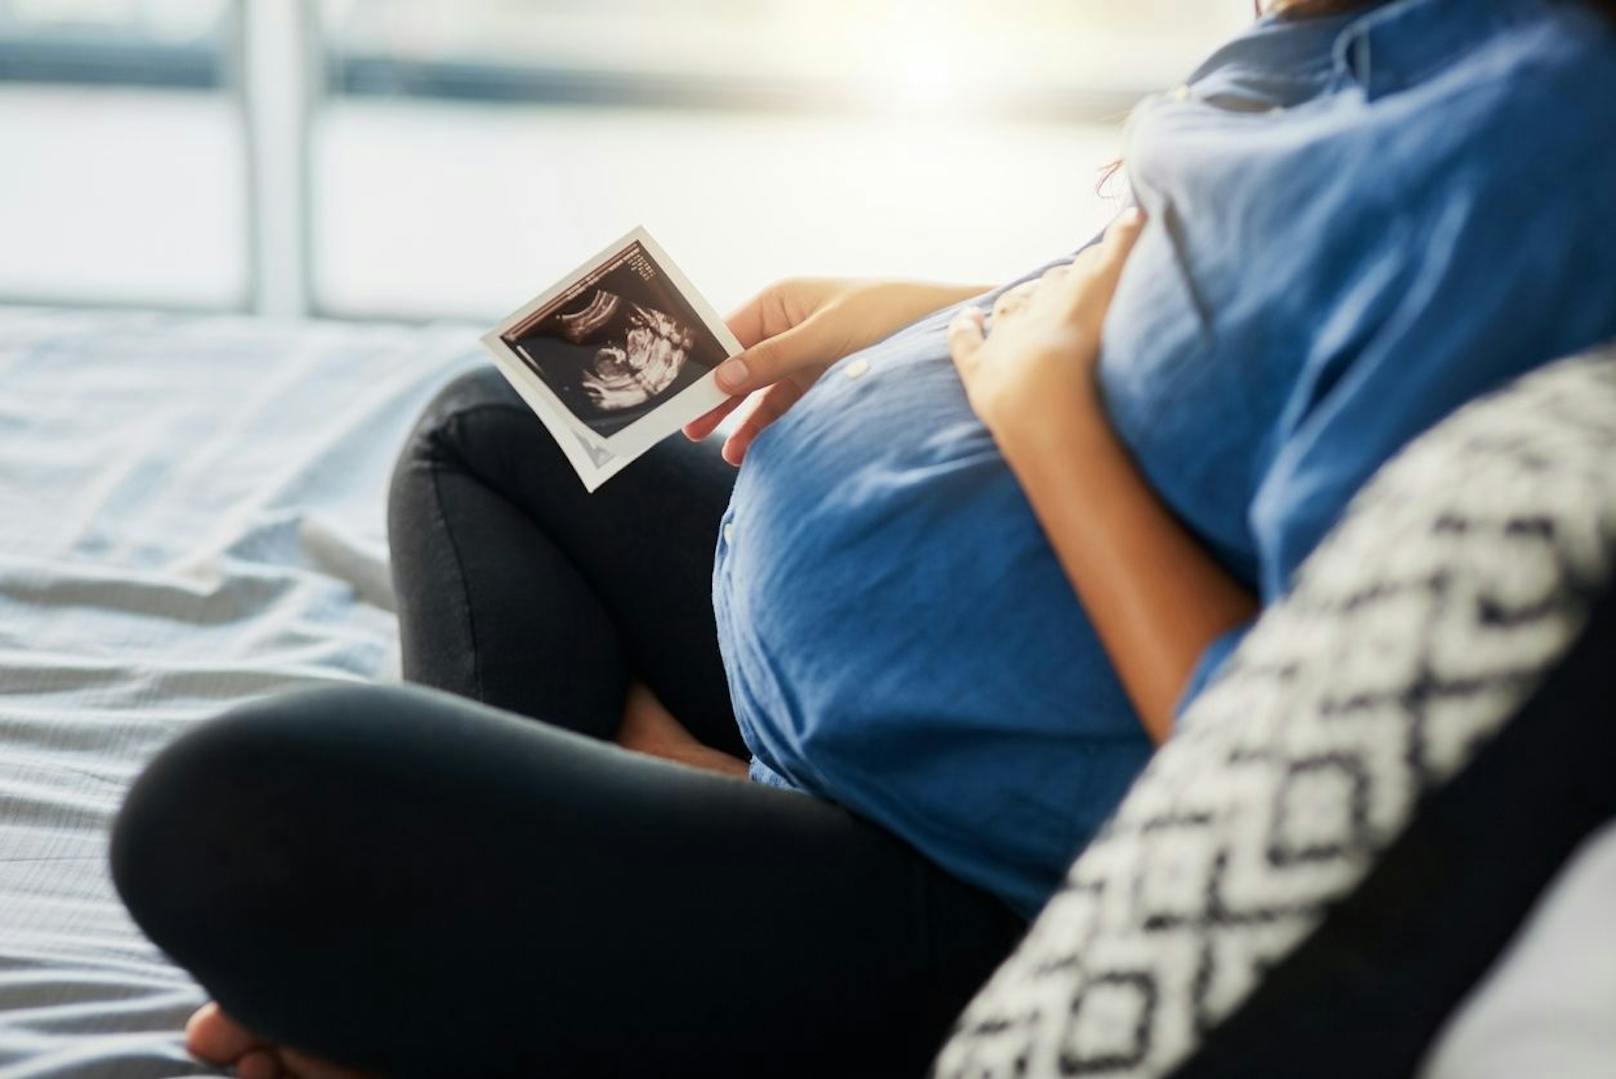 Ein junges Alter der Mutter verringert zwar das Risiko von Geburtsfehlern, kann es aber nicht 100-prozentig verhindern, wie die Studie zeigt.